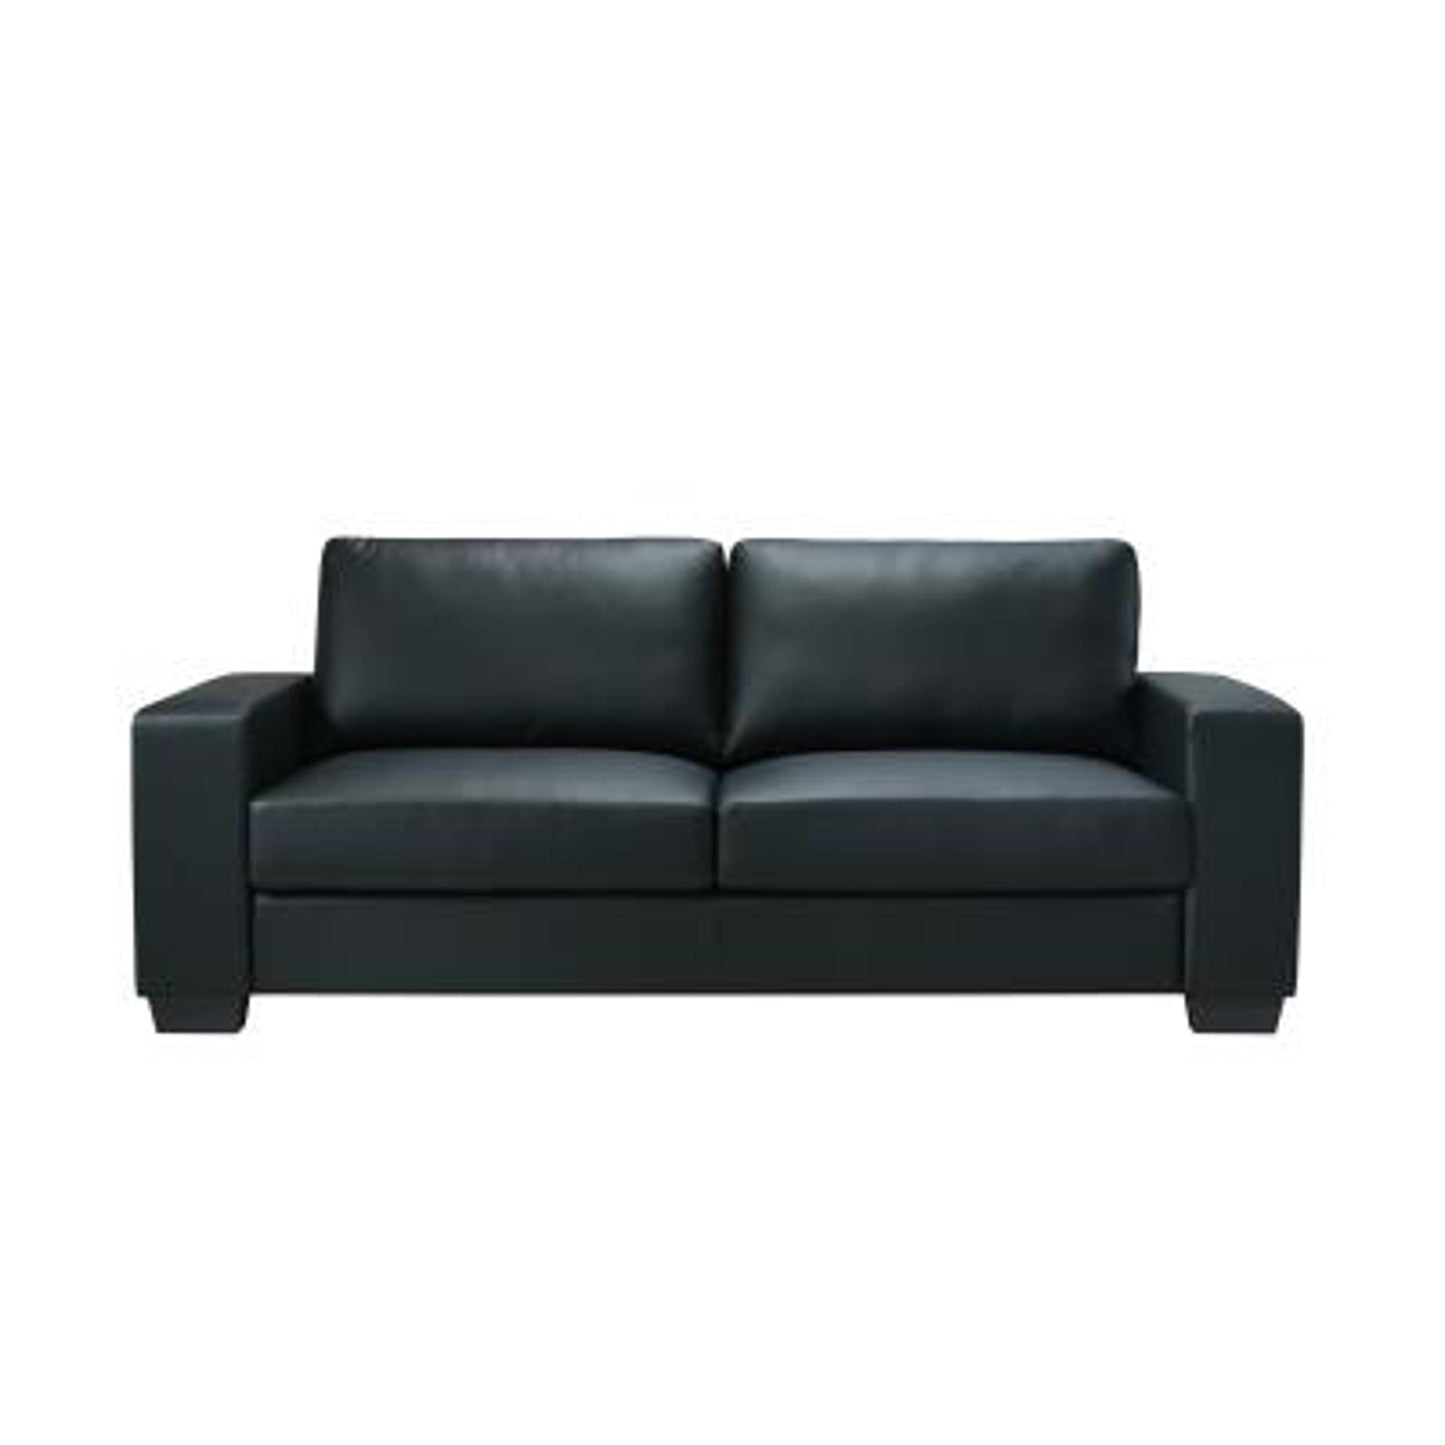 Sofa in Black PVC